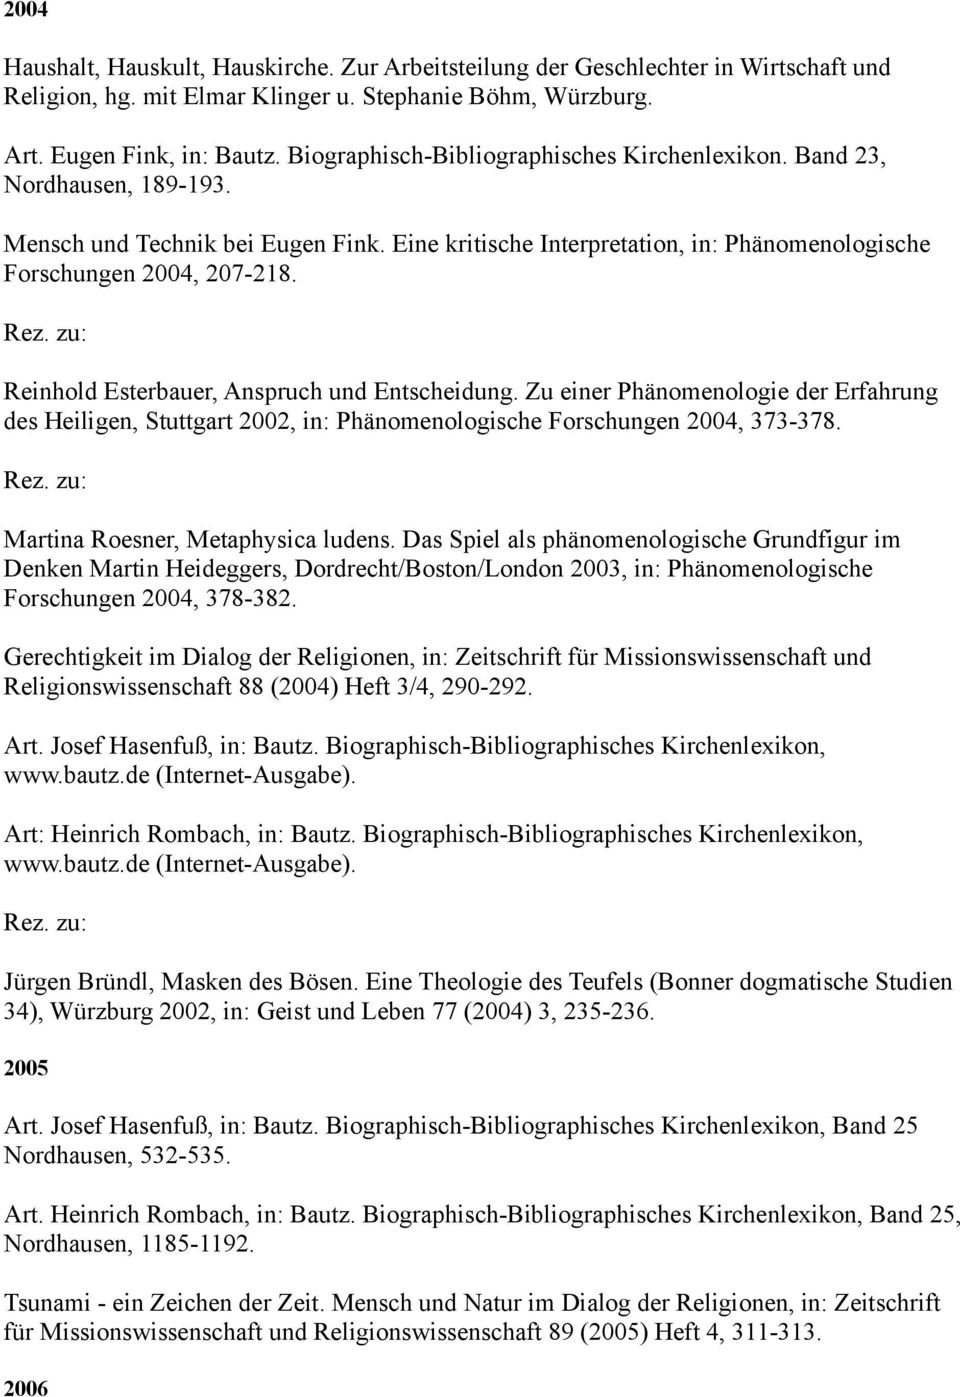 Reinhold Esterbauer, Anspruch und Entscheidung. Zu einer Phänomenologie der Erfahrung des Heiligen, Stuttgart 2002, in: Phänomenologische Forschungen 2004, 373-378.